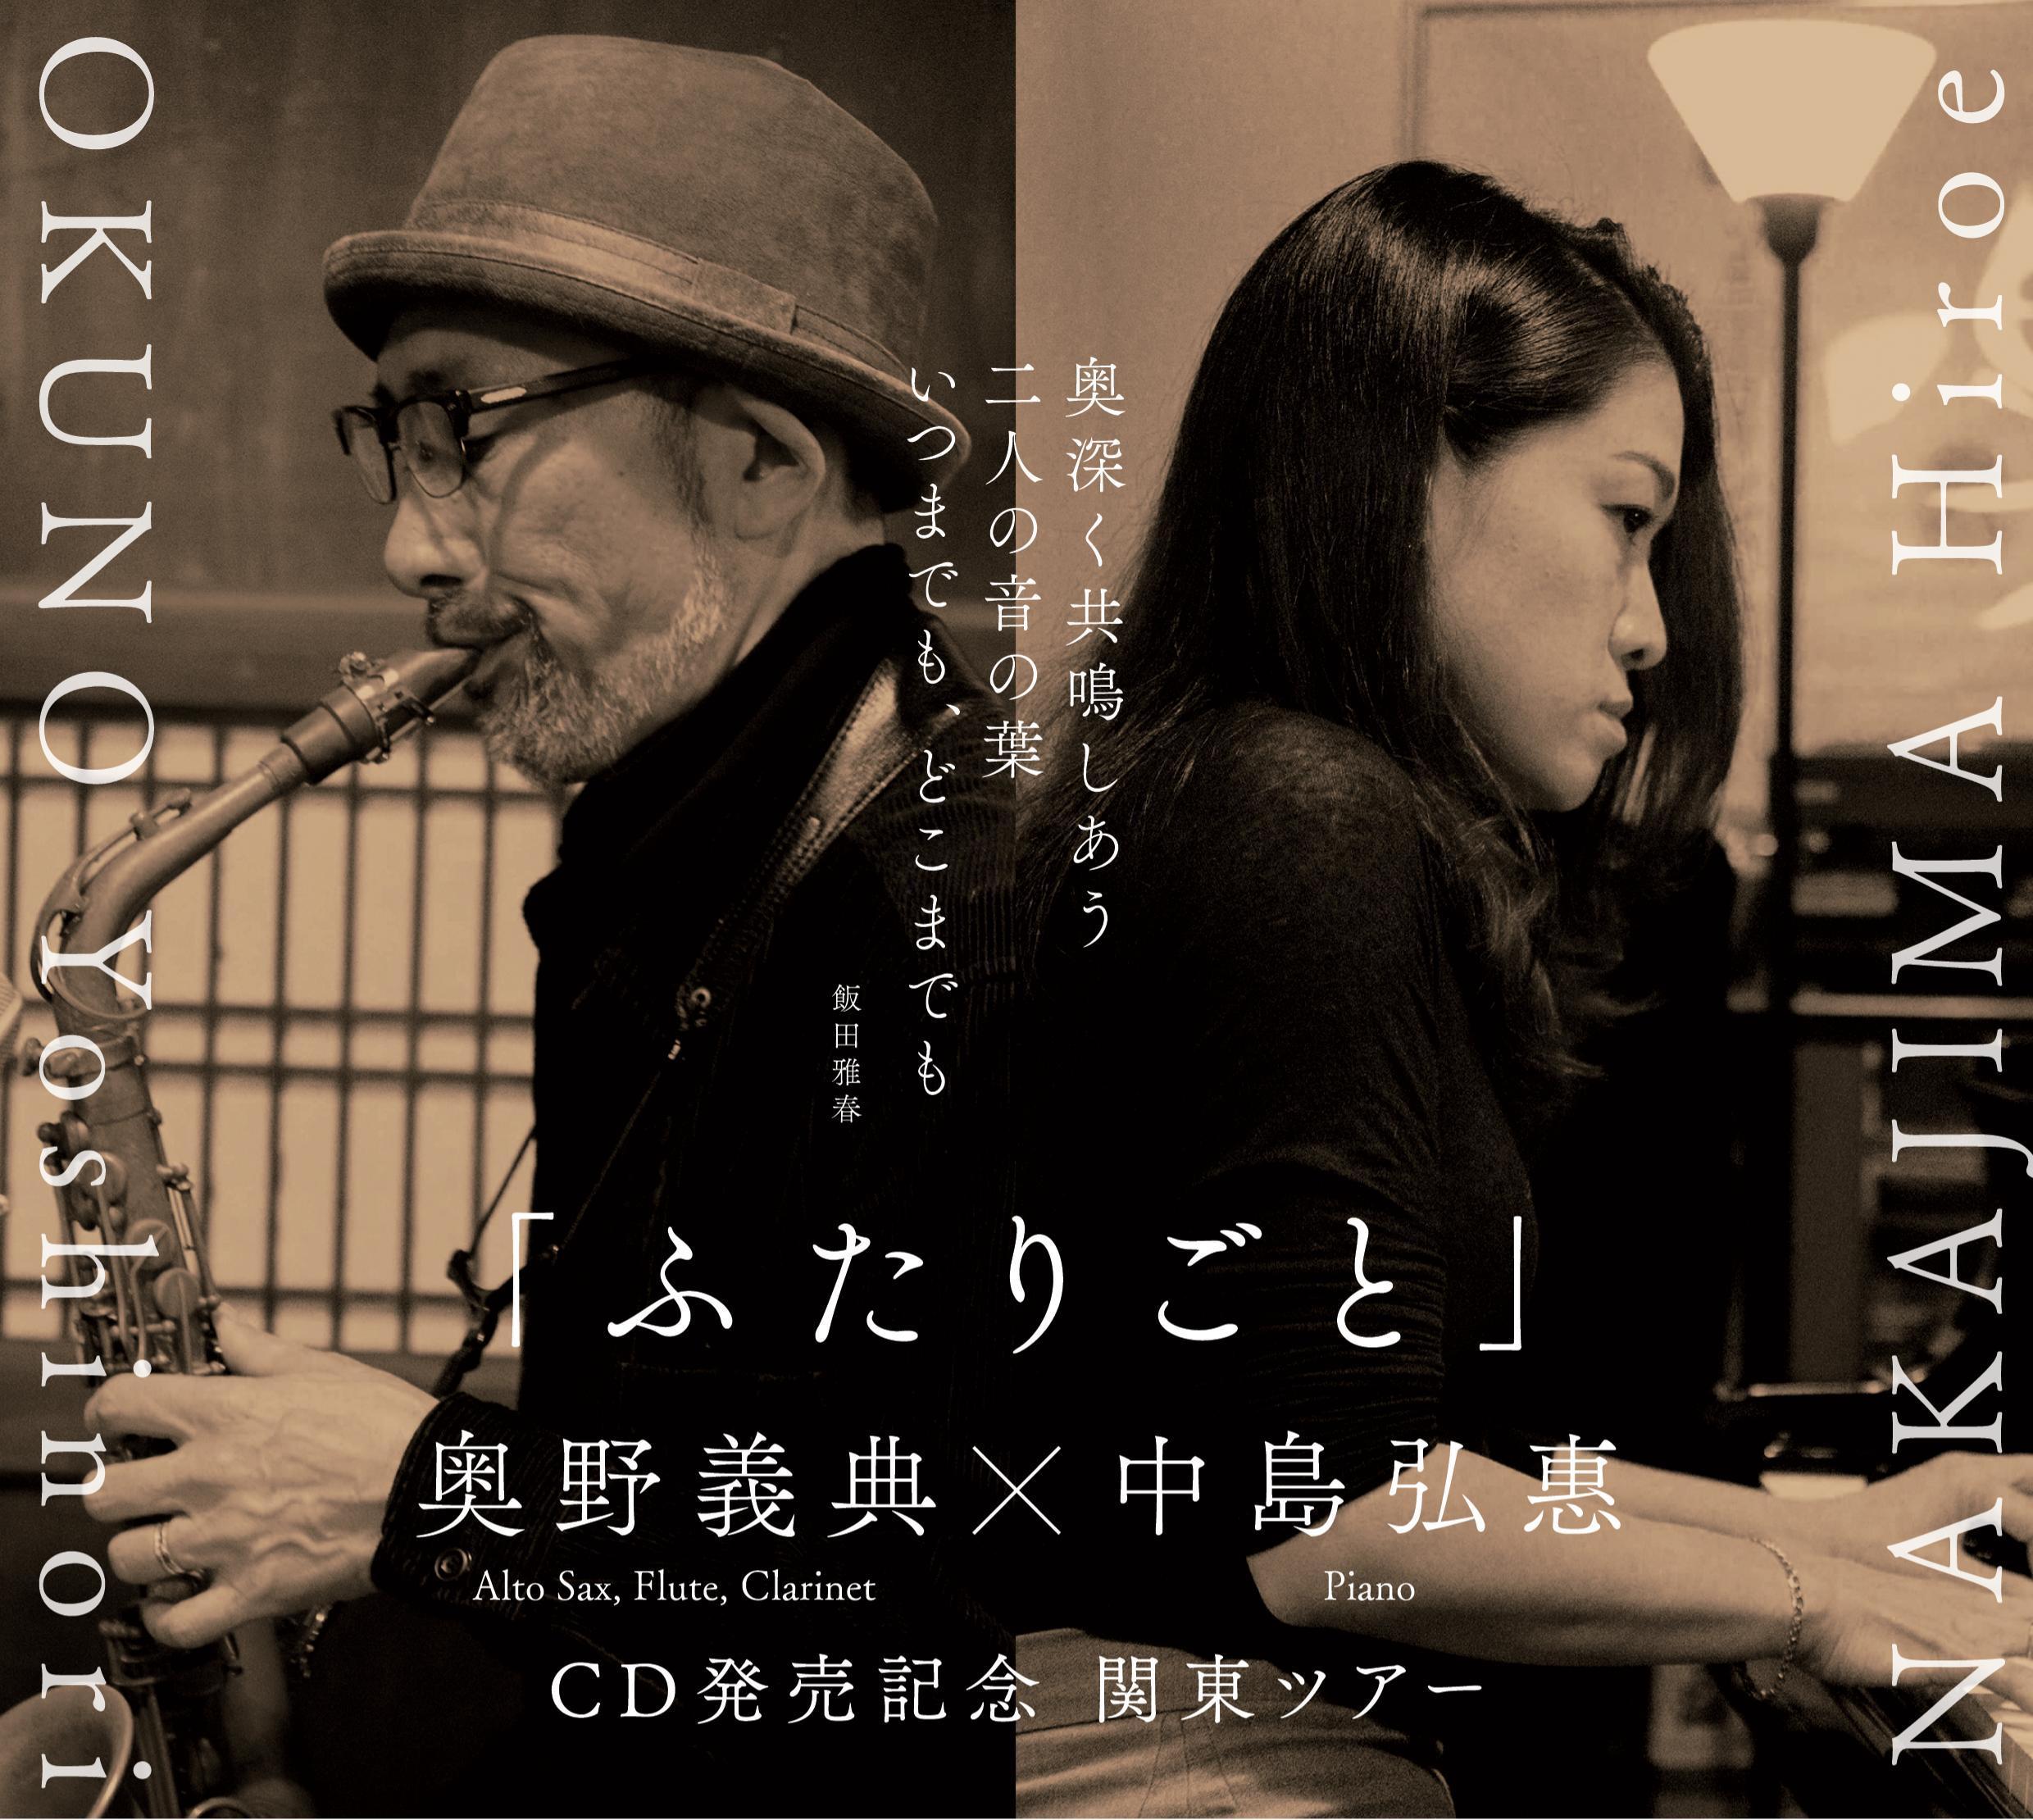 「ふたりごと」CD発売記念関東ツアー:奥野義典 、中島弘惠、ゲスト 飯田雅春